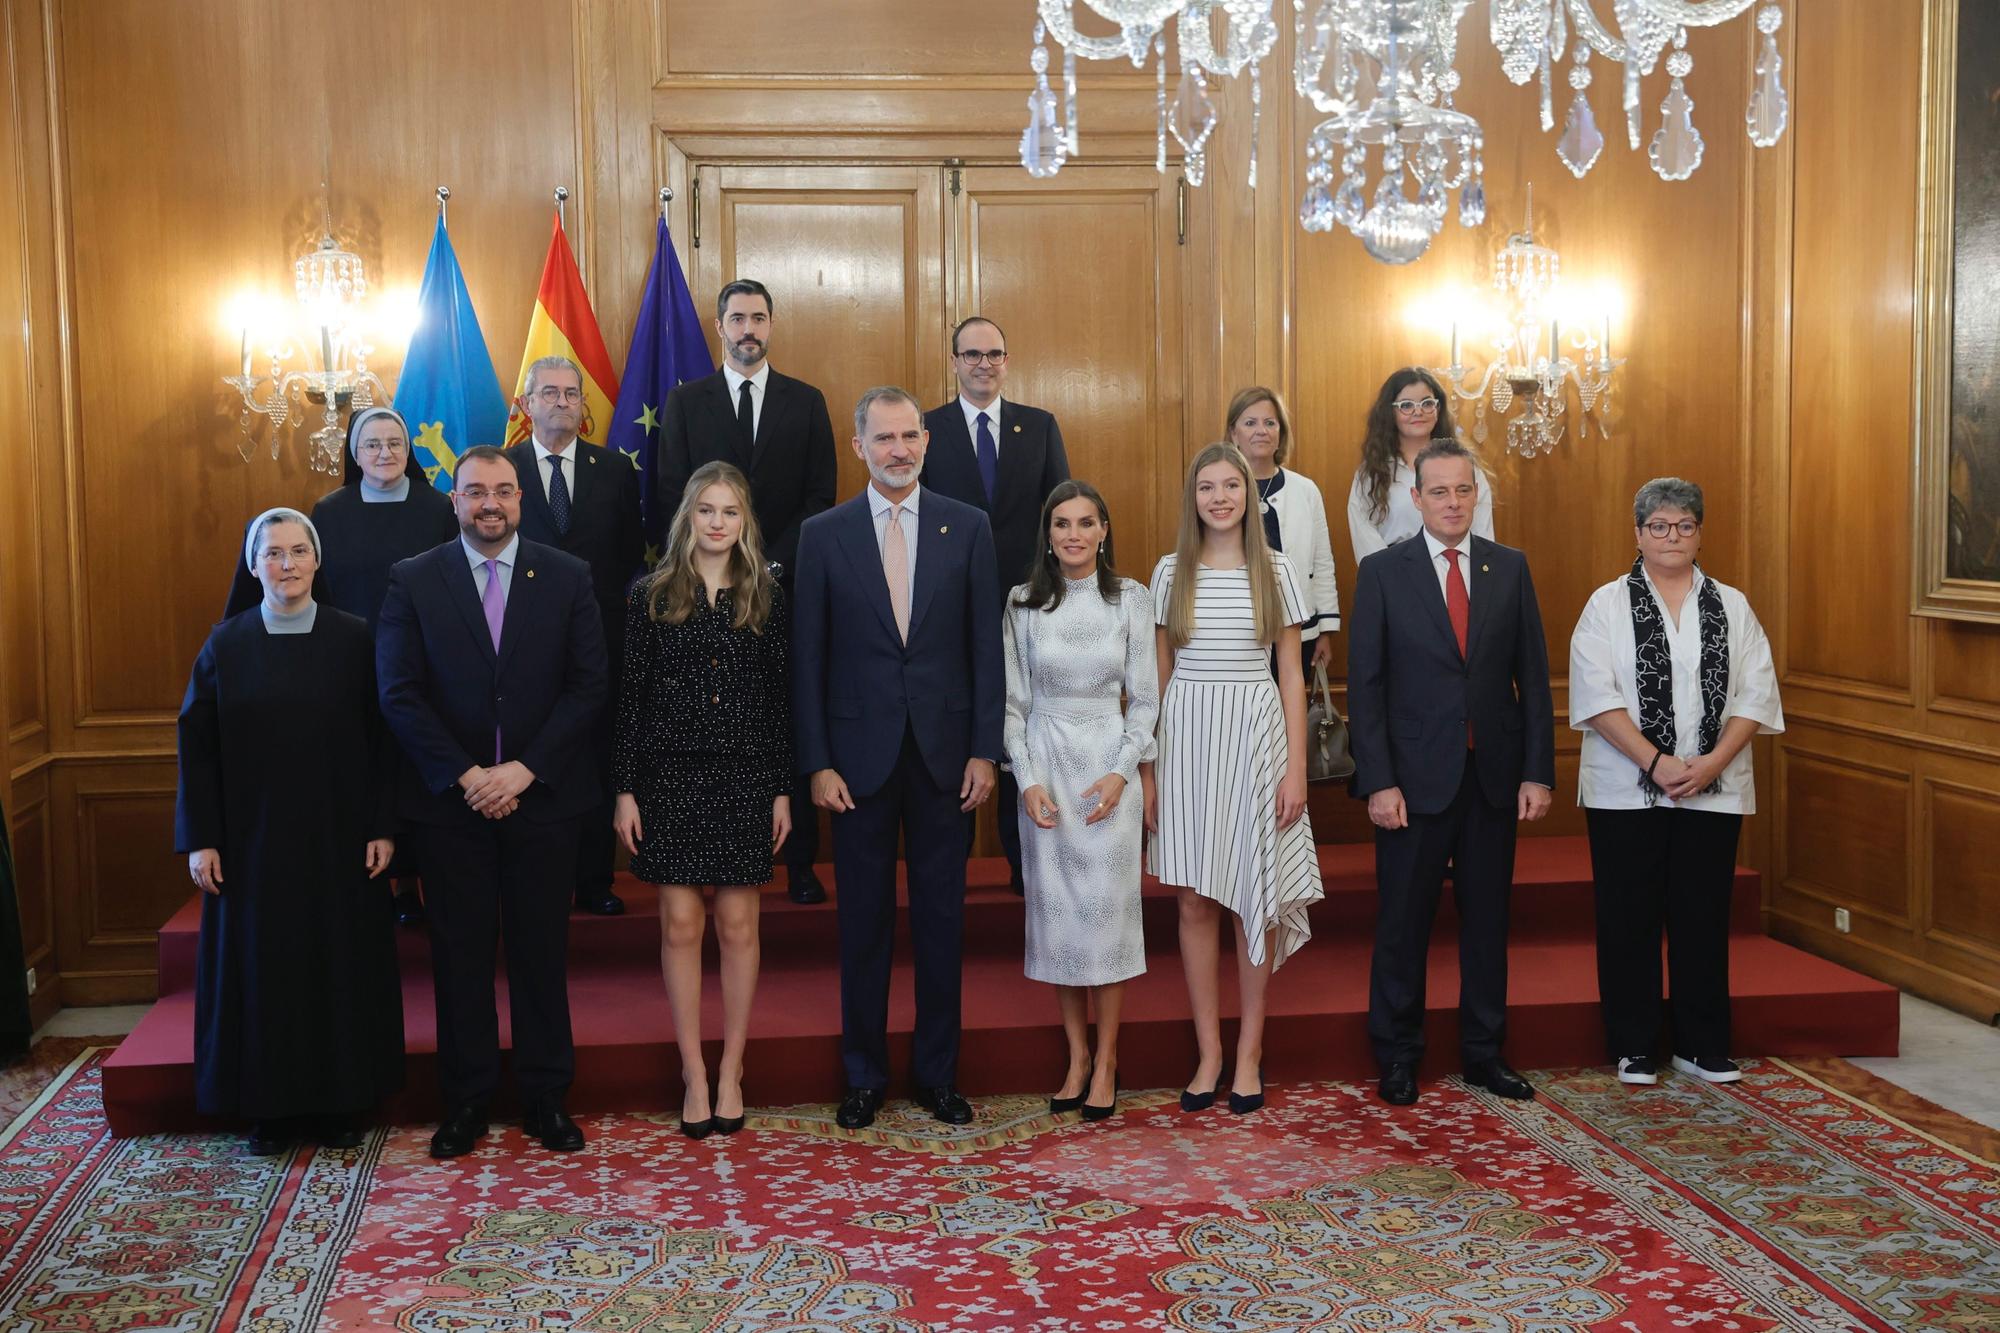 EN IMÁGENES: Personalidades y premiados se dan cita en el hotel de la Reconquista antes de la ceremonia de los premios "Princesa de Asturias"